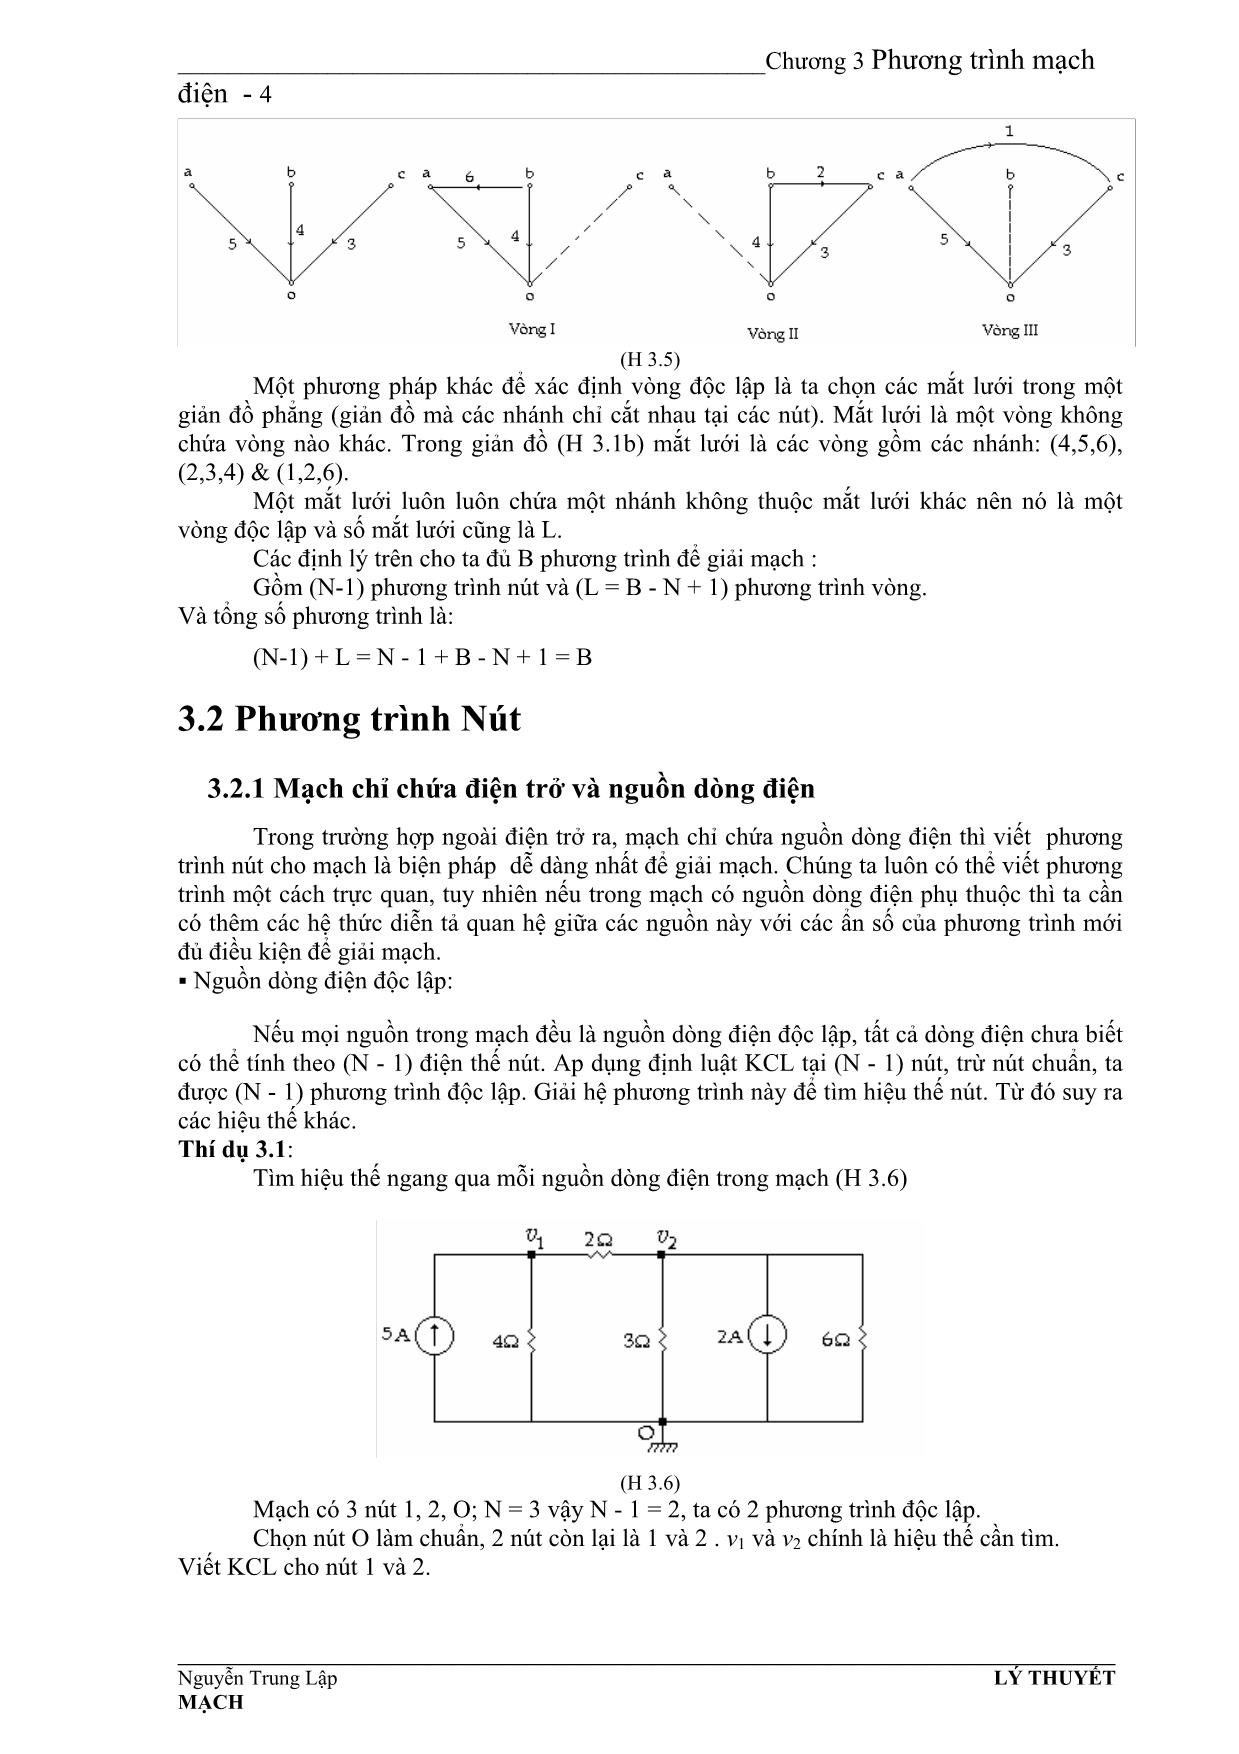 Giáo trình Mạch điện - Chương 3: Phương trình mạch điện trang 4